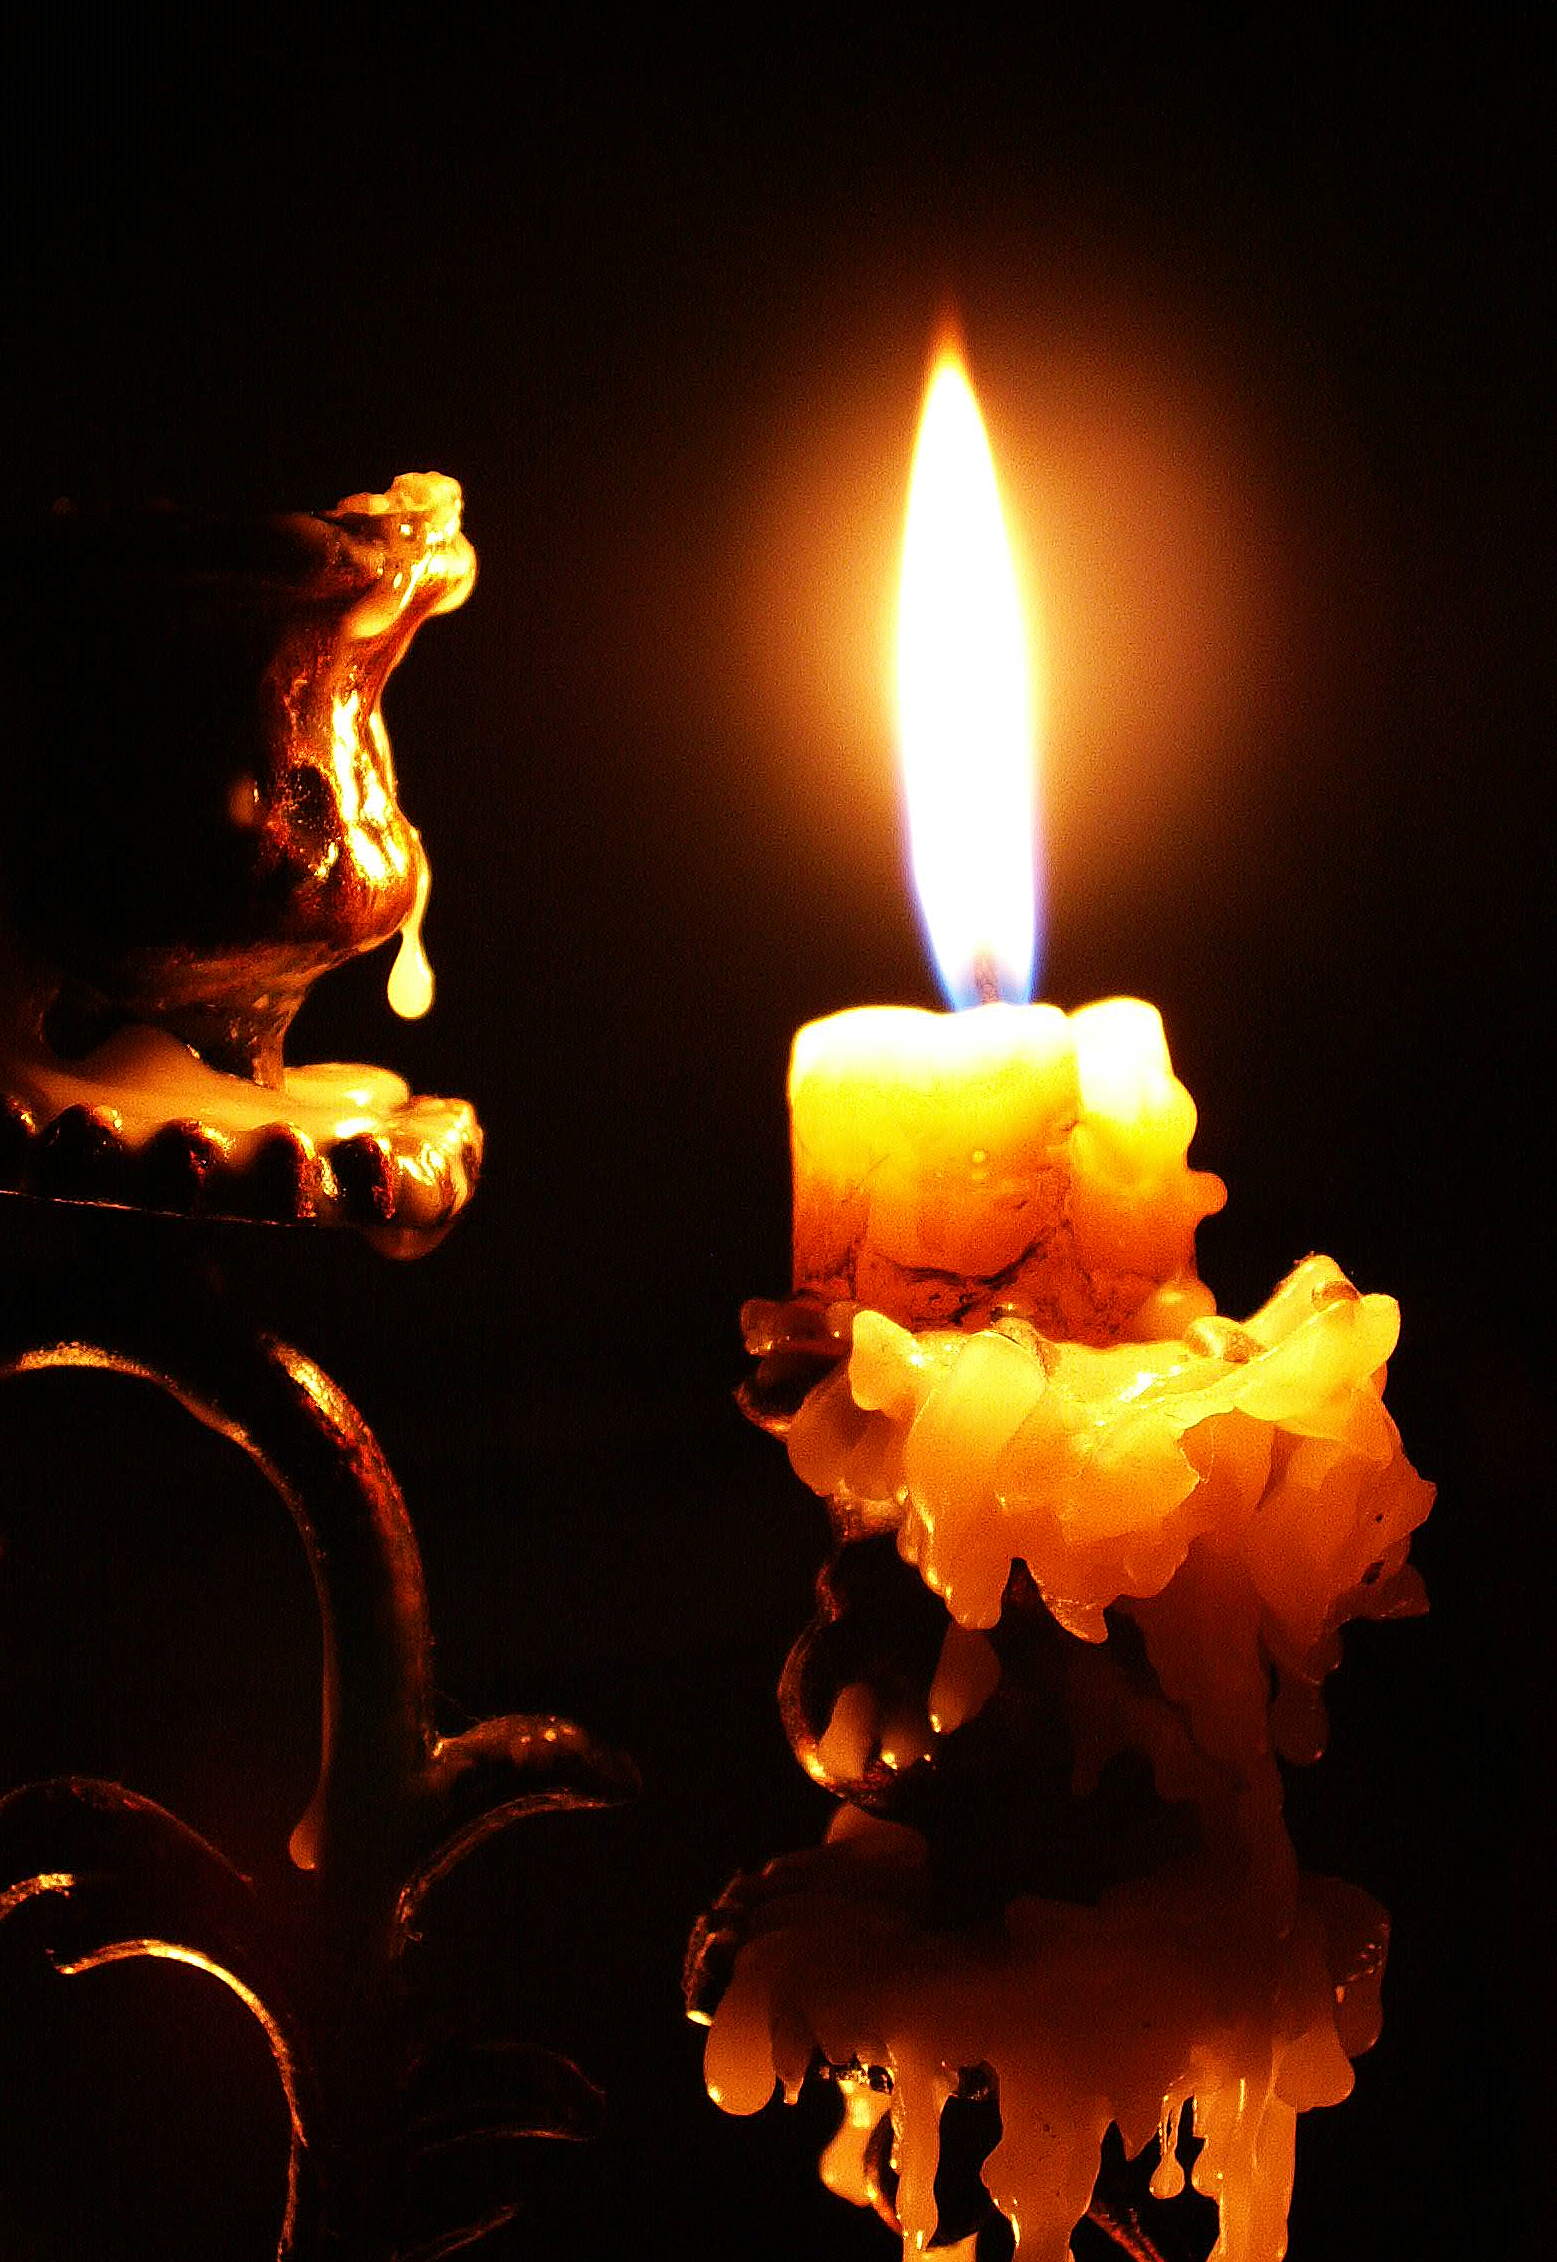 Догорает огарок свечи. Горящие свечи. Горящая свеча. Свеча горела. Зажженная свеча.